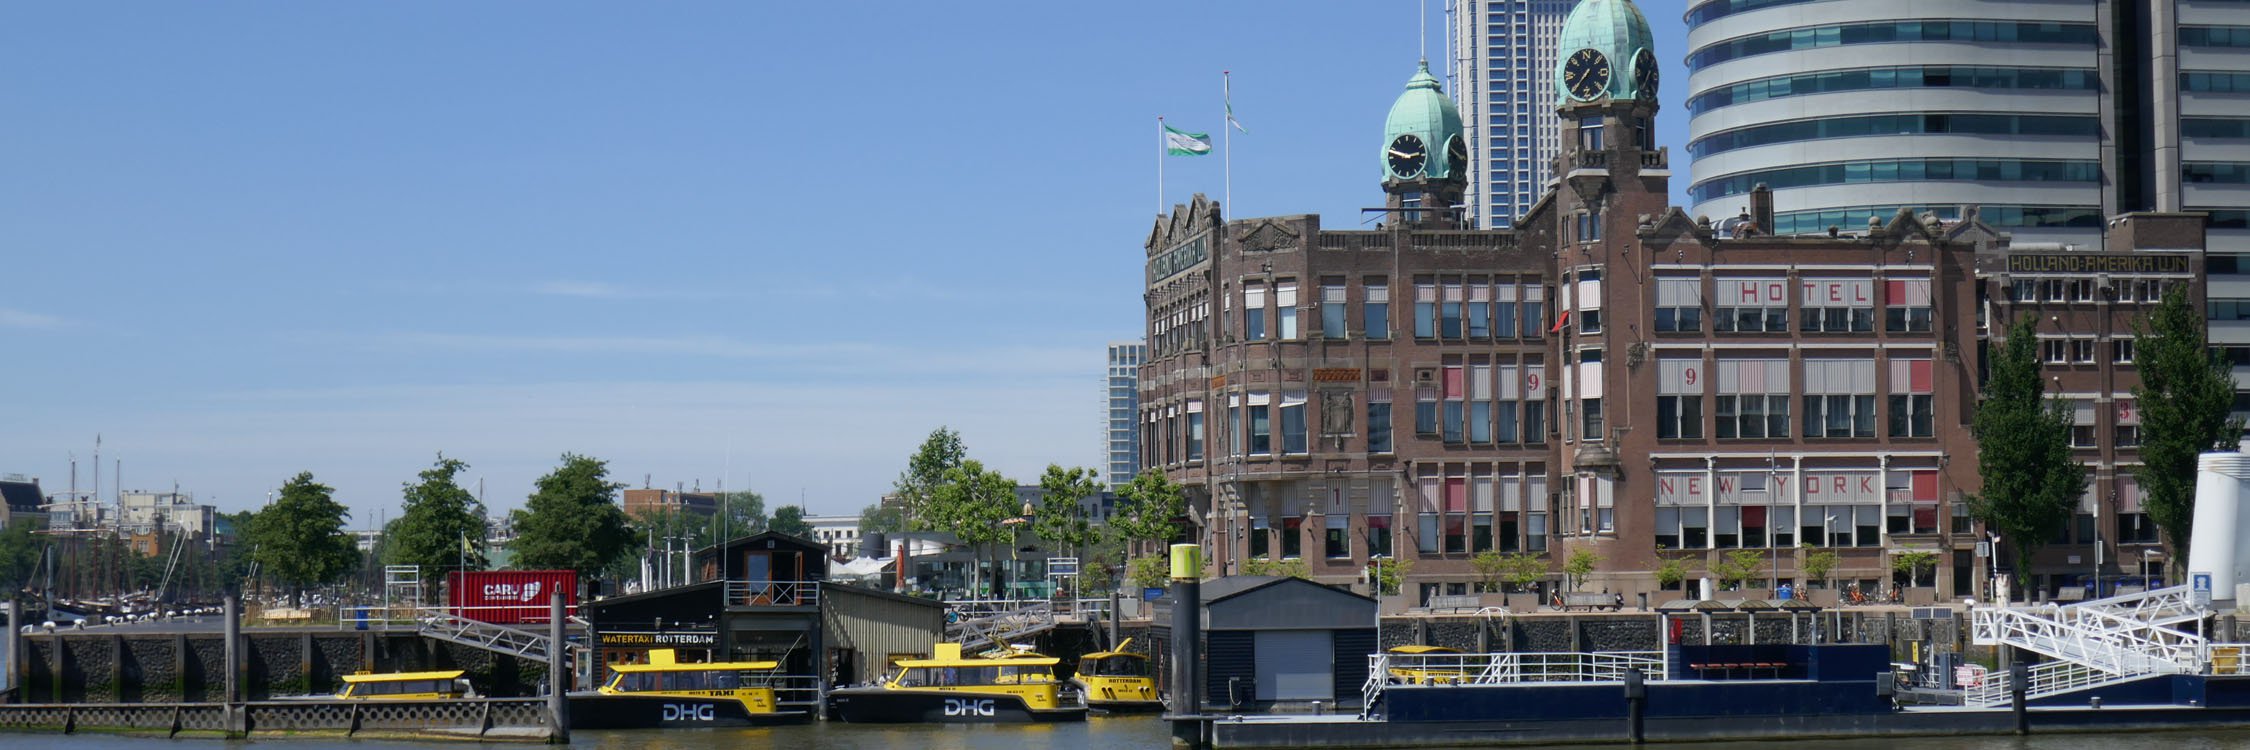 Rotterdam Kop van Zuid.jpg